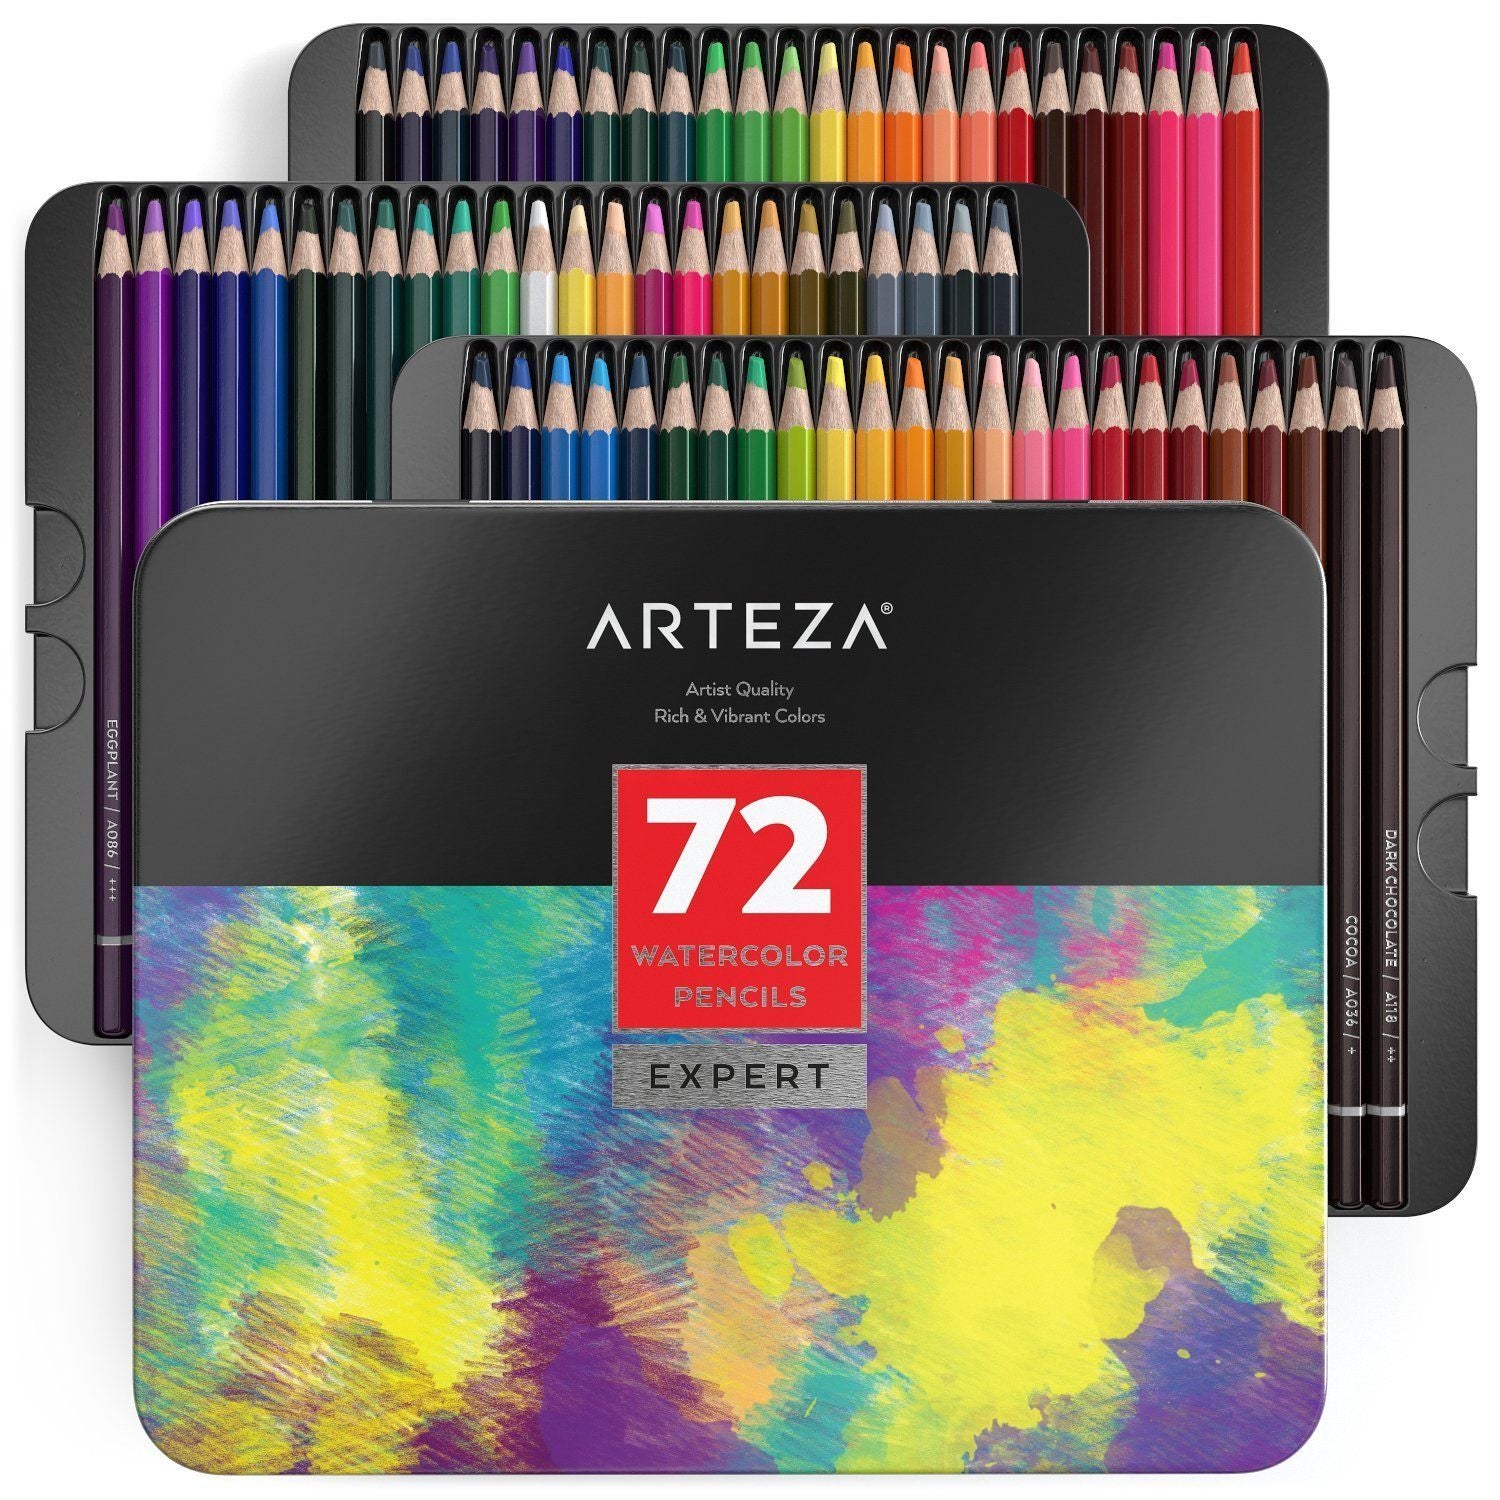 Arteza Professional Watercolor Pencils - Set of 72